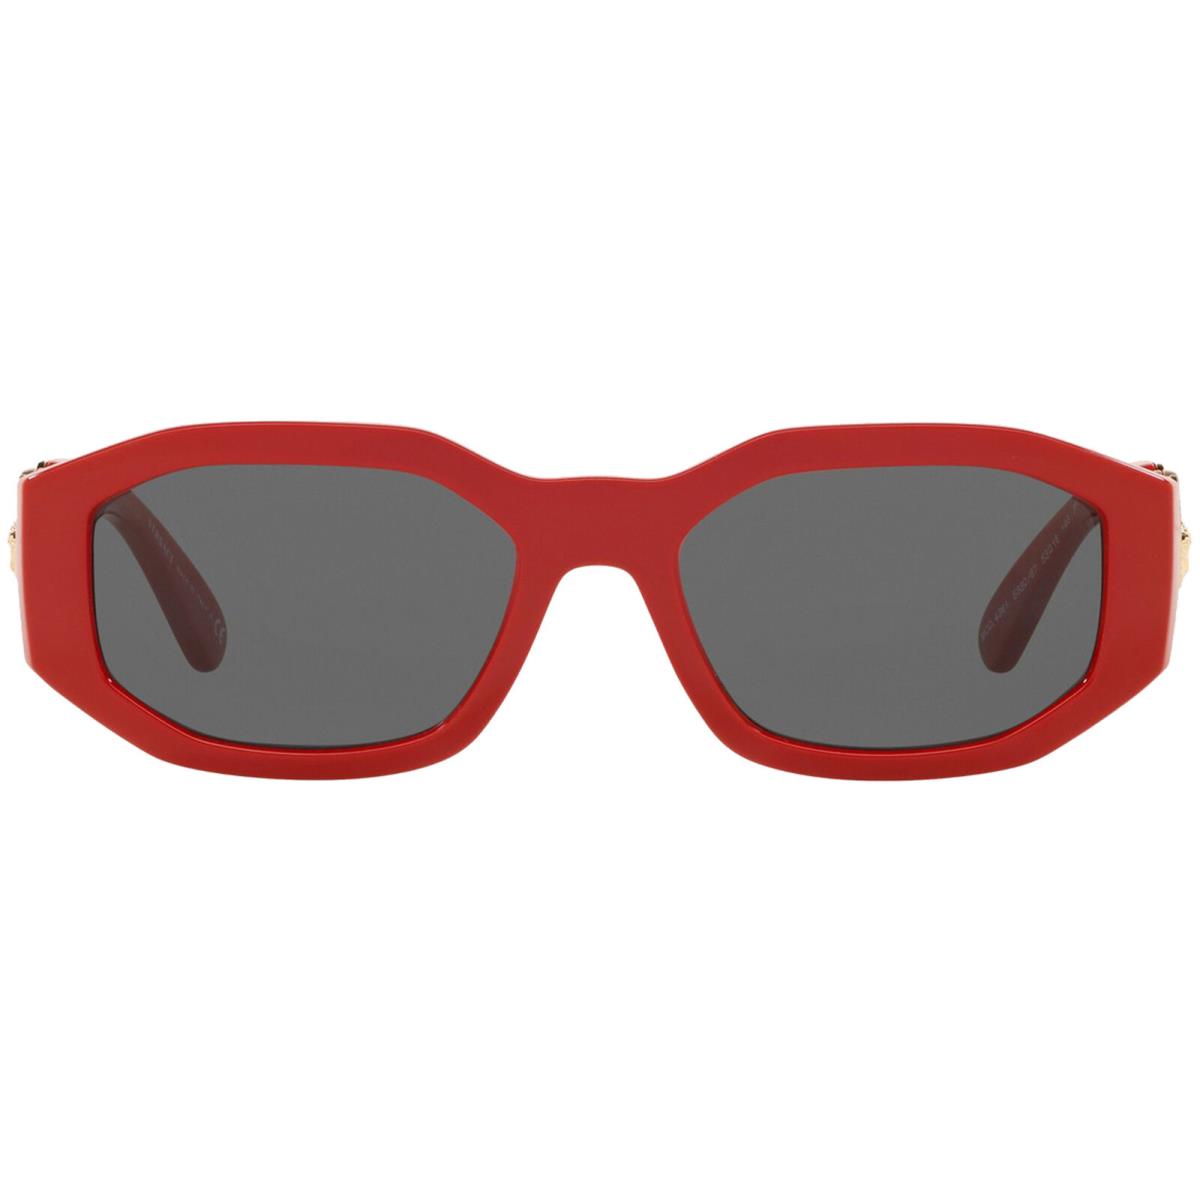 Versace Medusa Biggie Women`s Red Geometric Sunglasses - VE4361 533087 - Italy - Frame: Red, Lens: Gray